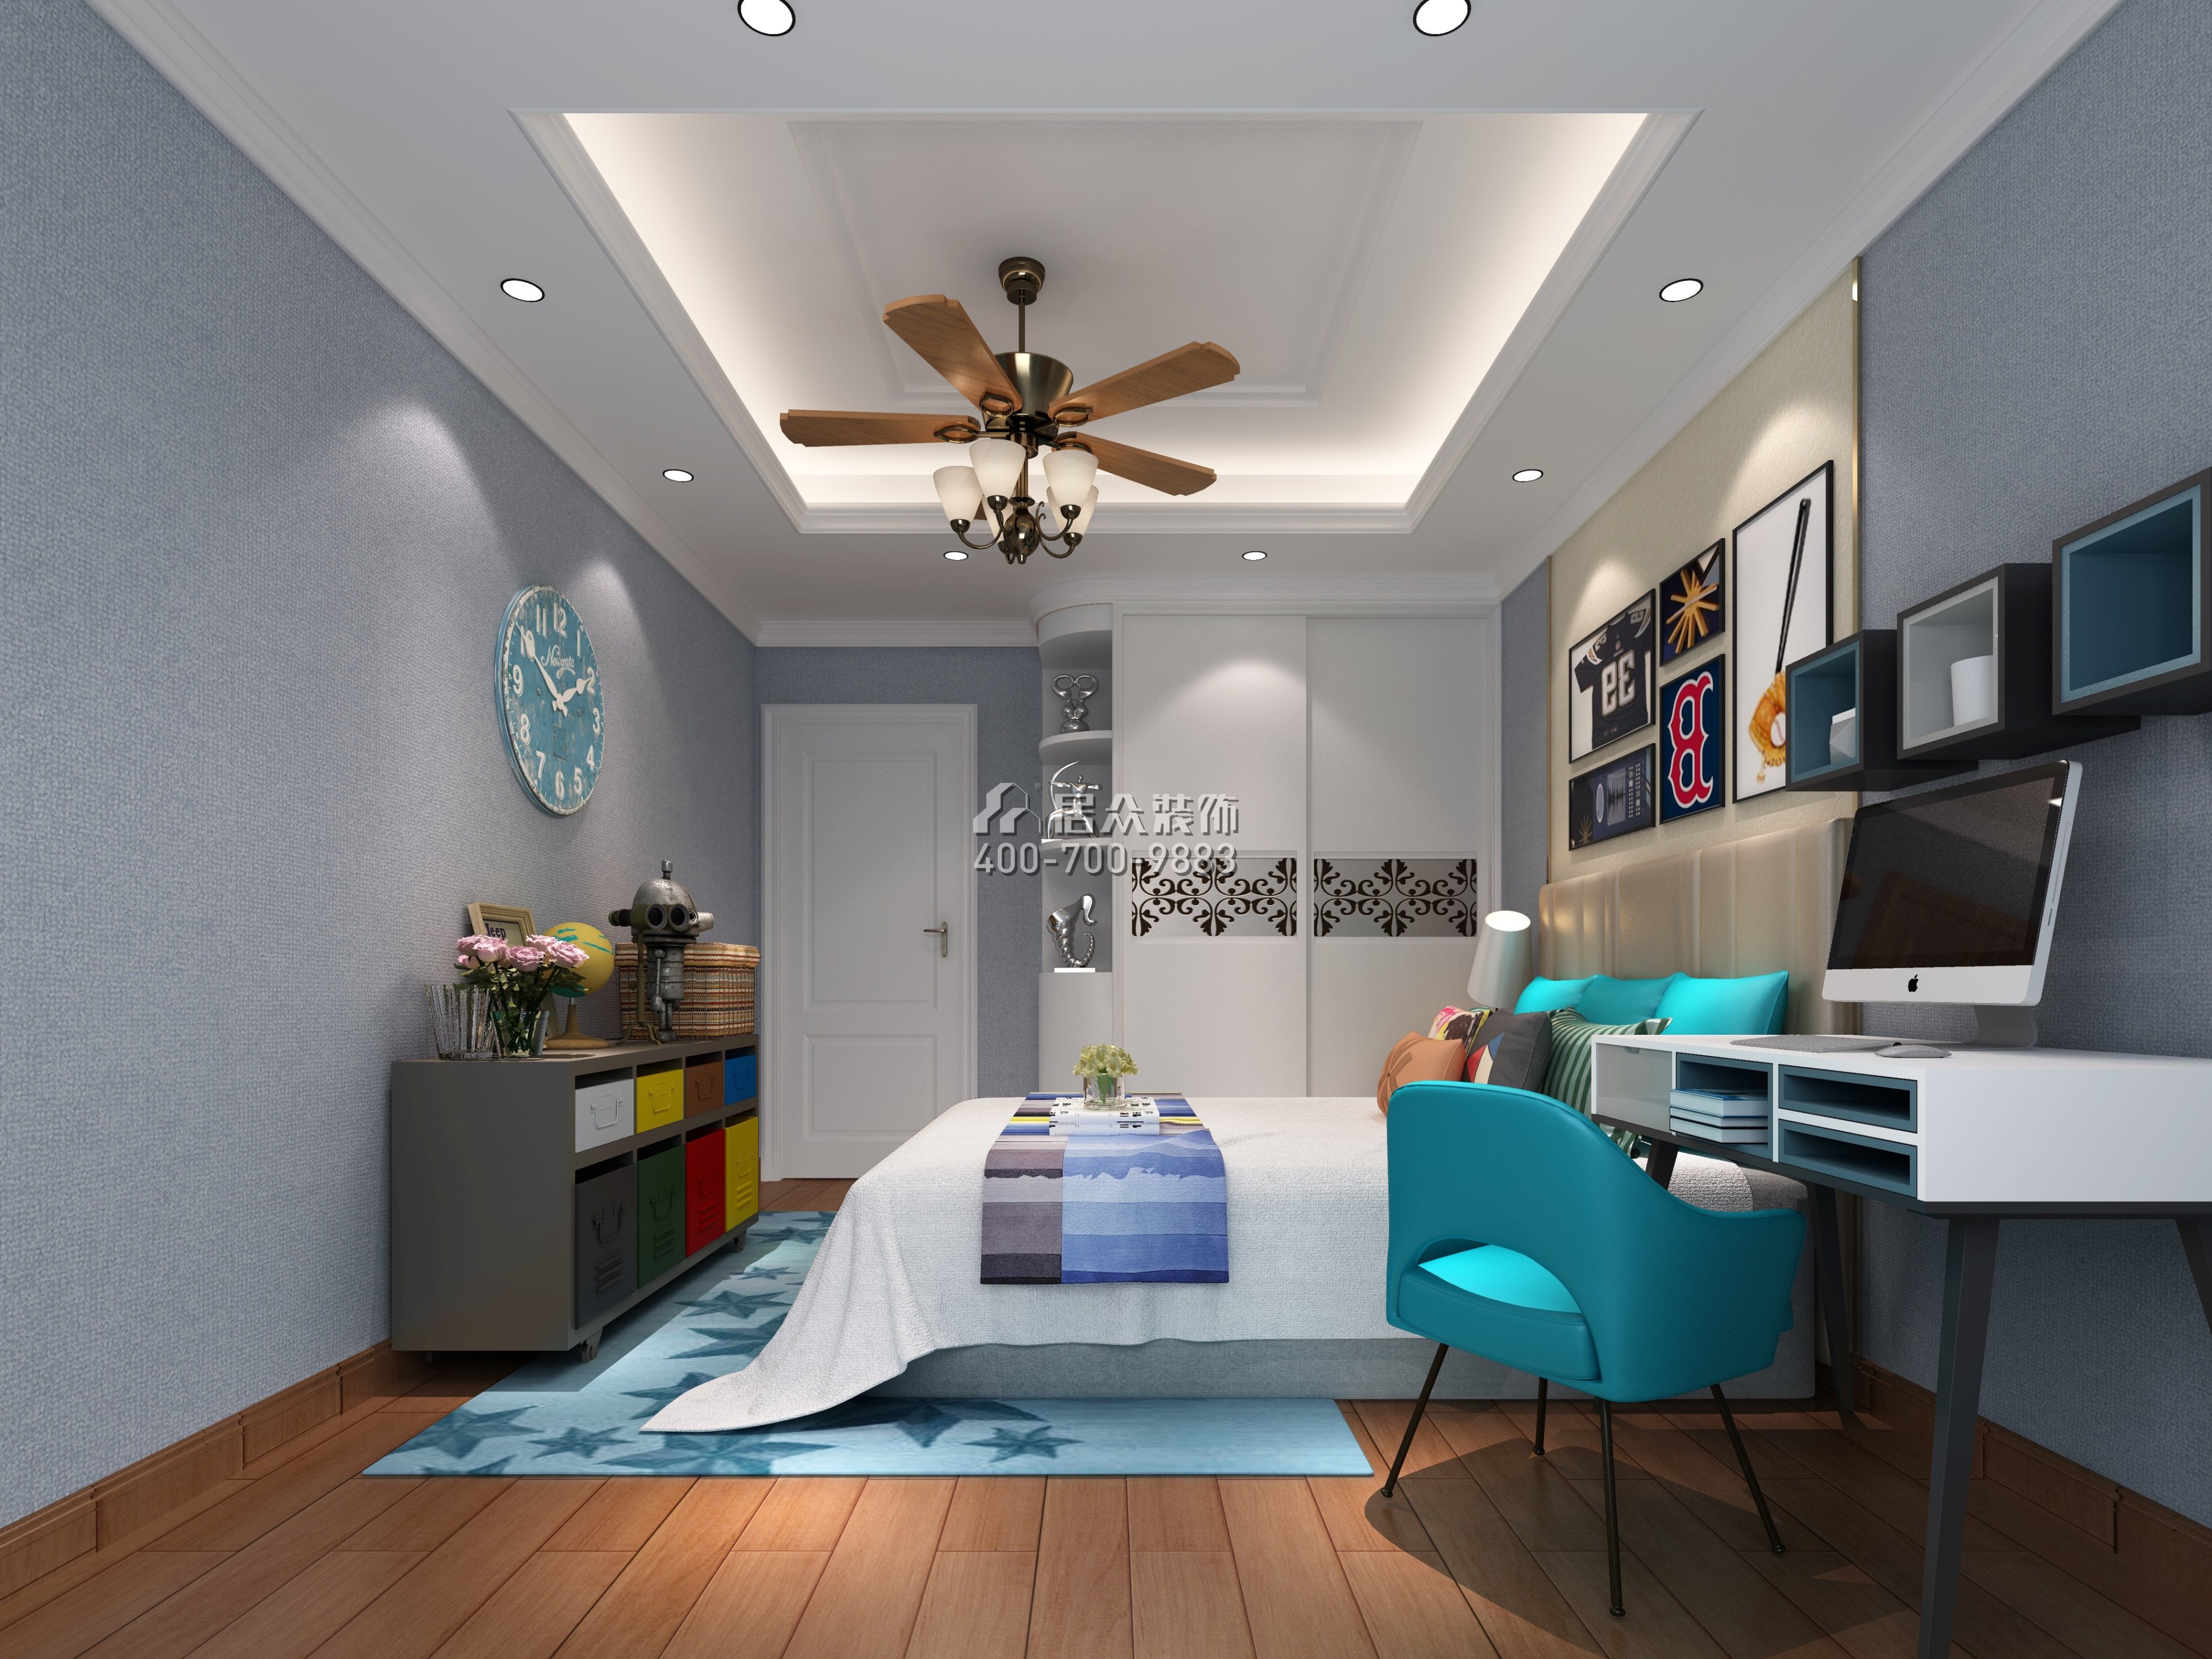 中信新城125平方米混搭风格平层户型卧室装修效果图